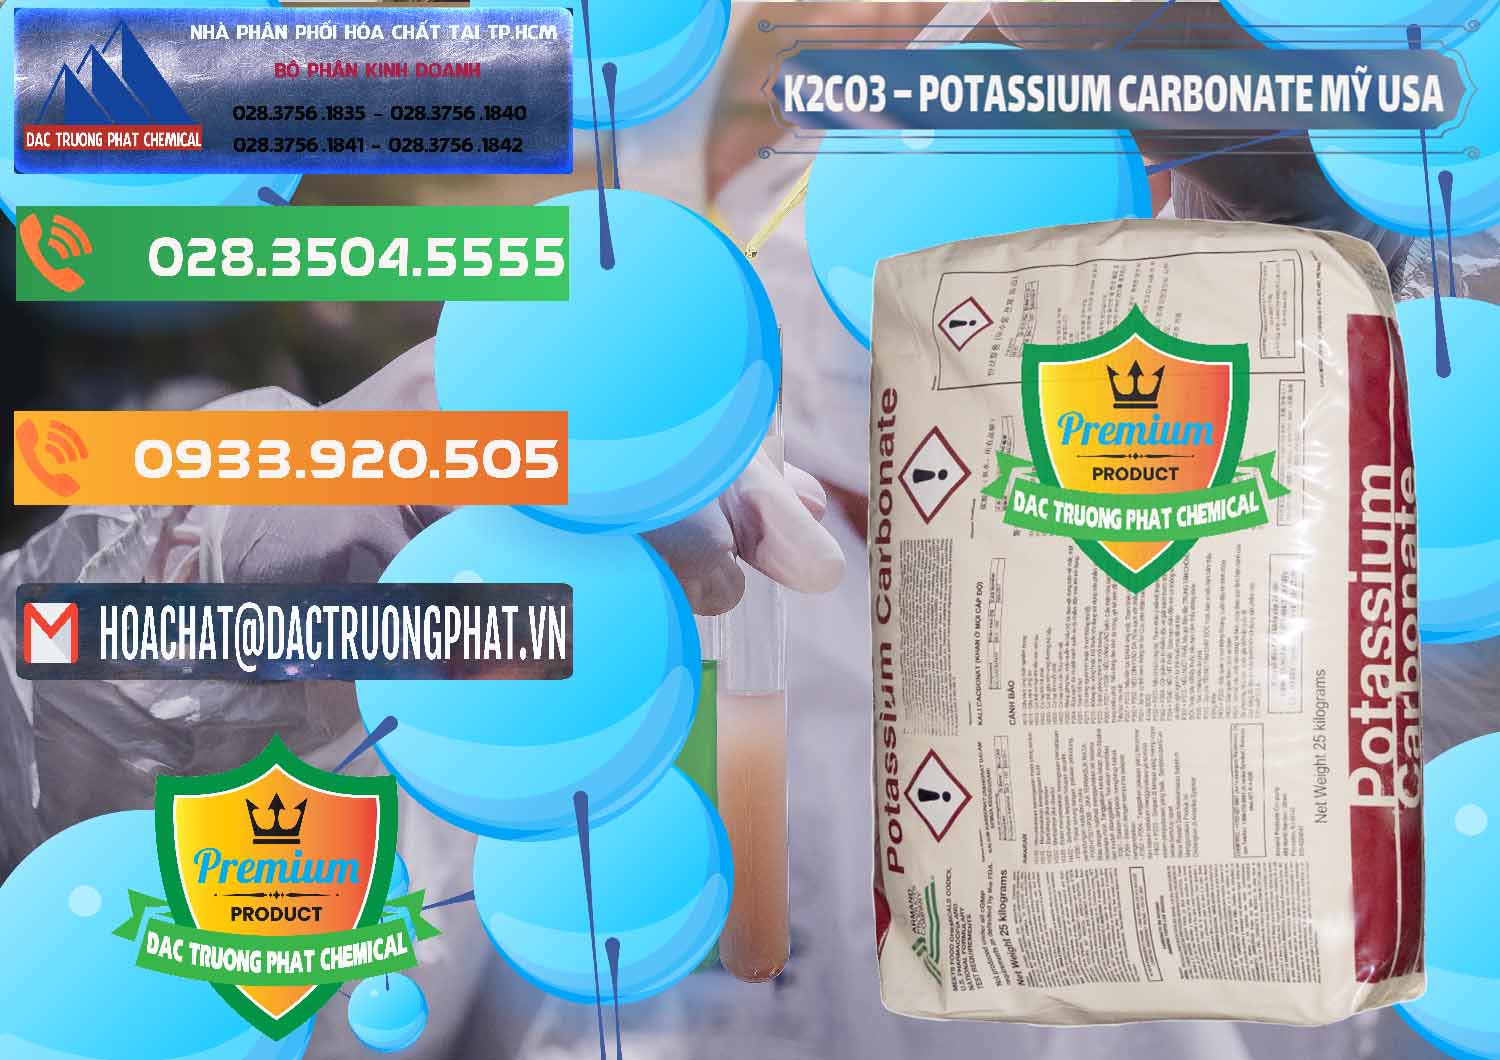 Chuyên kinh doanh và bán K2Co3 – Potassium Carbonate Mỹ USA - 0082 - Cty cung cấp ( phân phối ) hóa chất tại TP.HCM - hoachatxulynuoc.com.vn